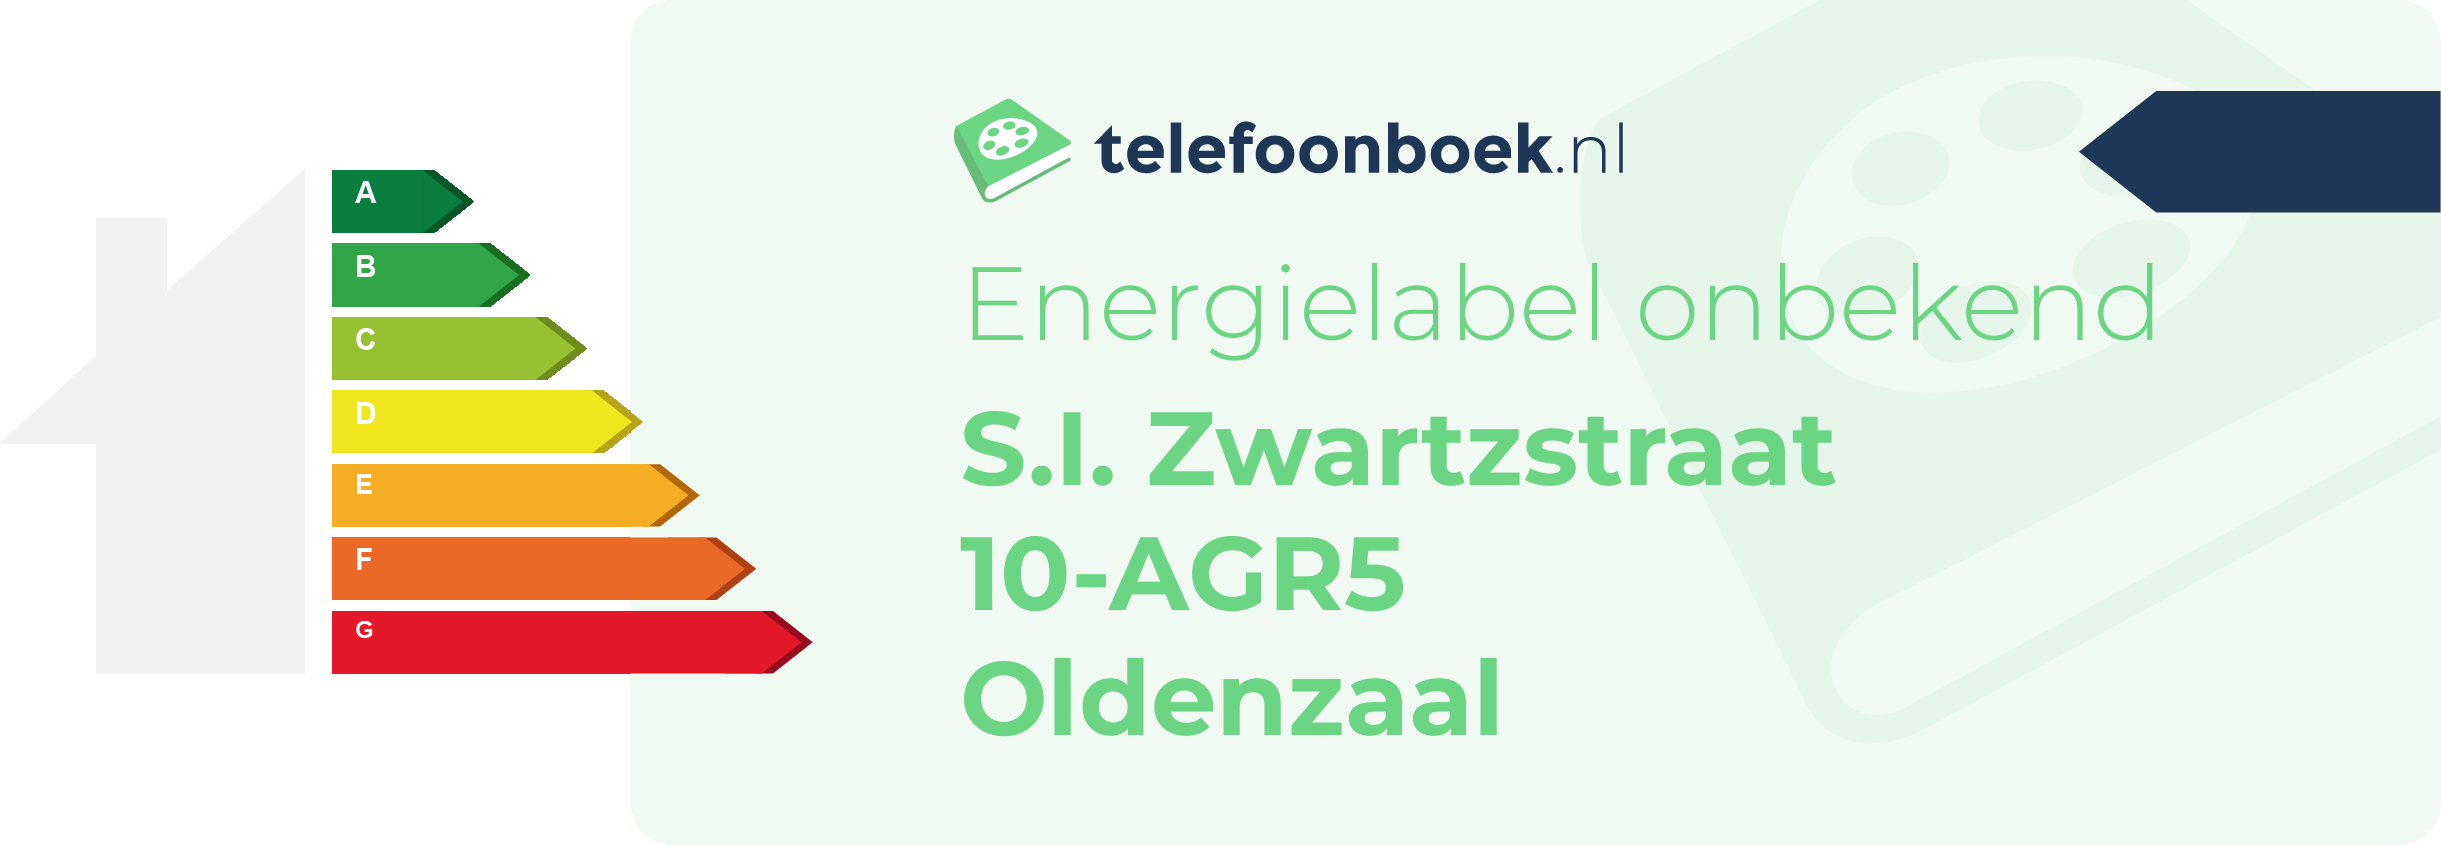 Energielabel S.I. Zwartzstraat 10-AGR5 Oldenzaal